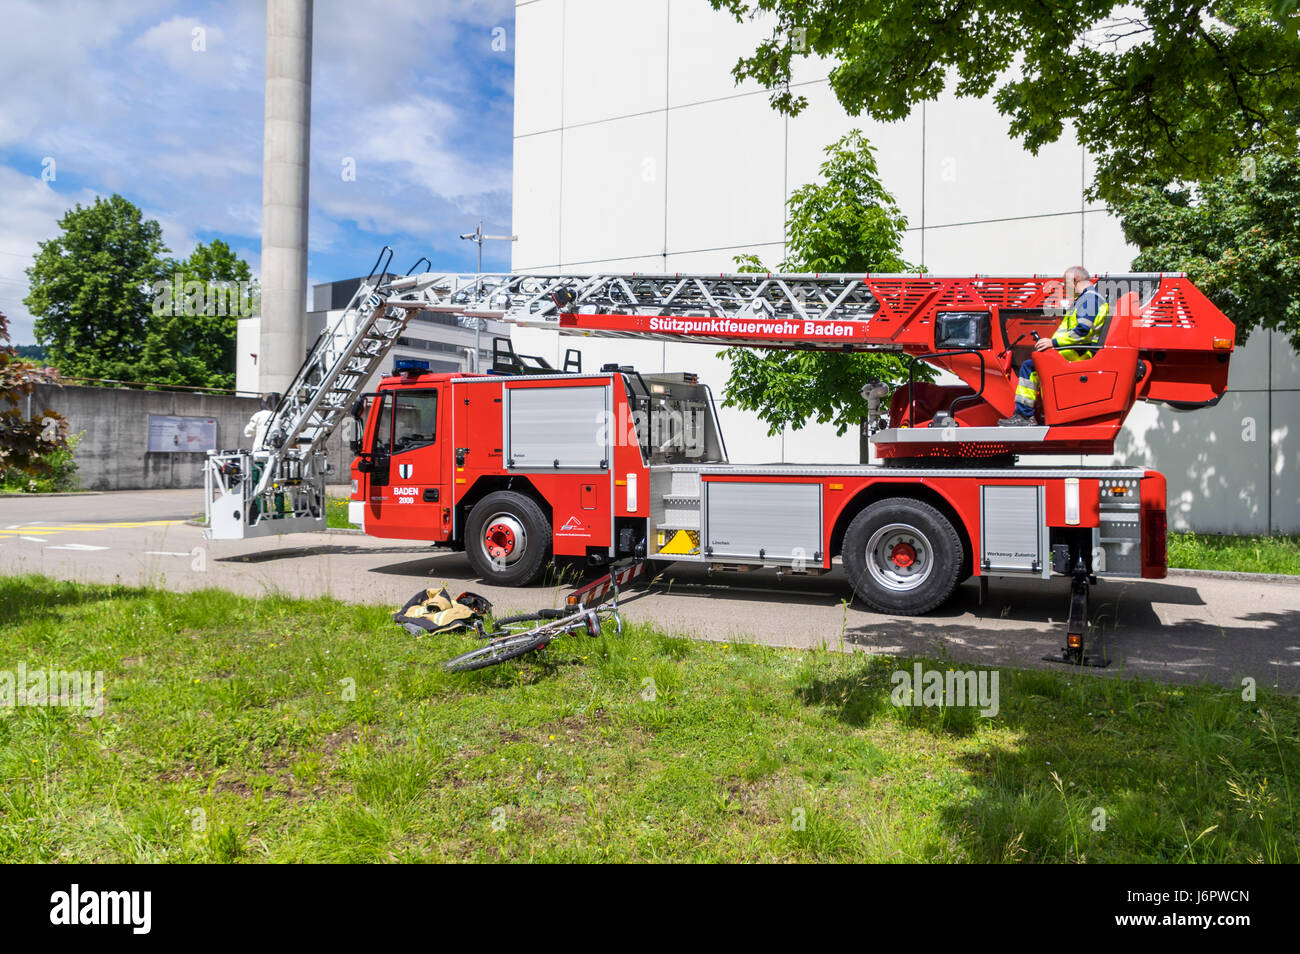 Seitlicher Blick auf einen Leiterwagen einer Schweizer Feuerwehr Iveco  Magirus 160E30 Plattenspieler. Ausleger/Buchsen erweitert, aber Leiter noch  eingefahren Stockfotografie - Alamy